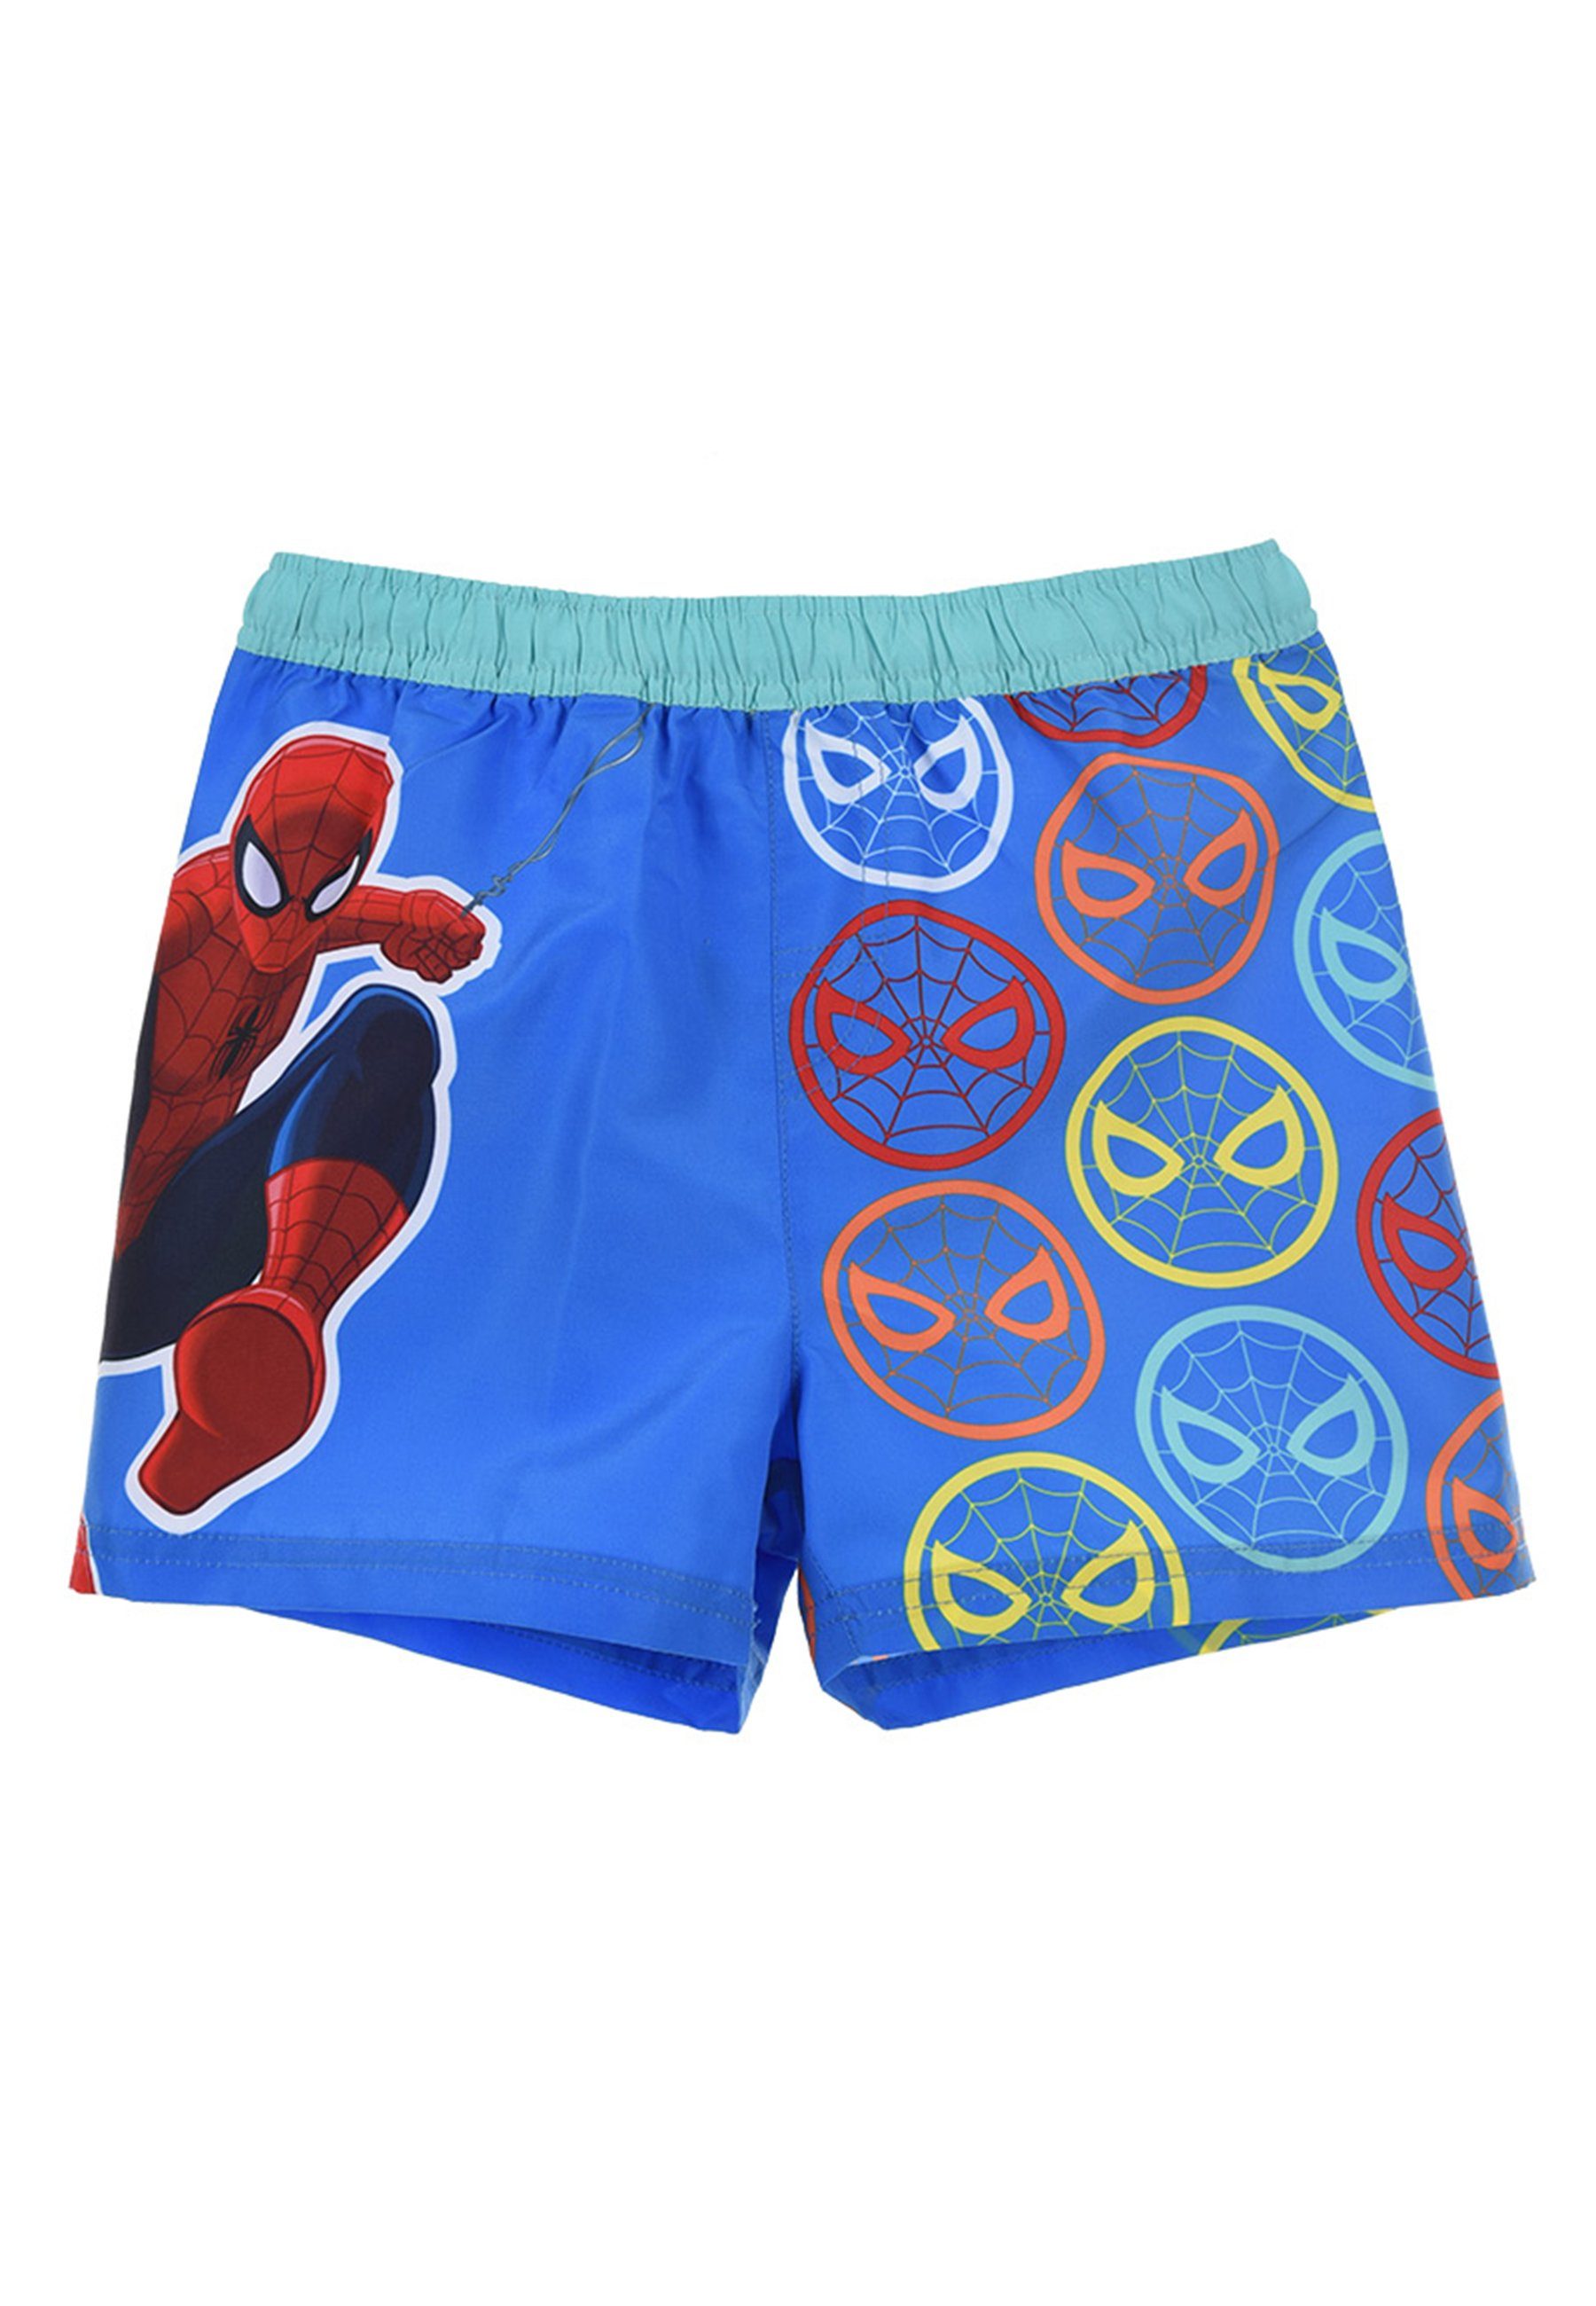 Spiderman Badeshorts Marvel Jungen Kinder Badehose Bermuda-Shorts Badepants Blau